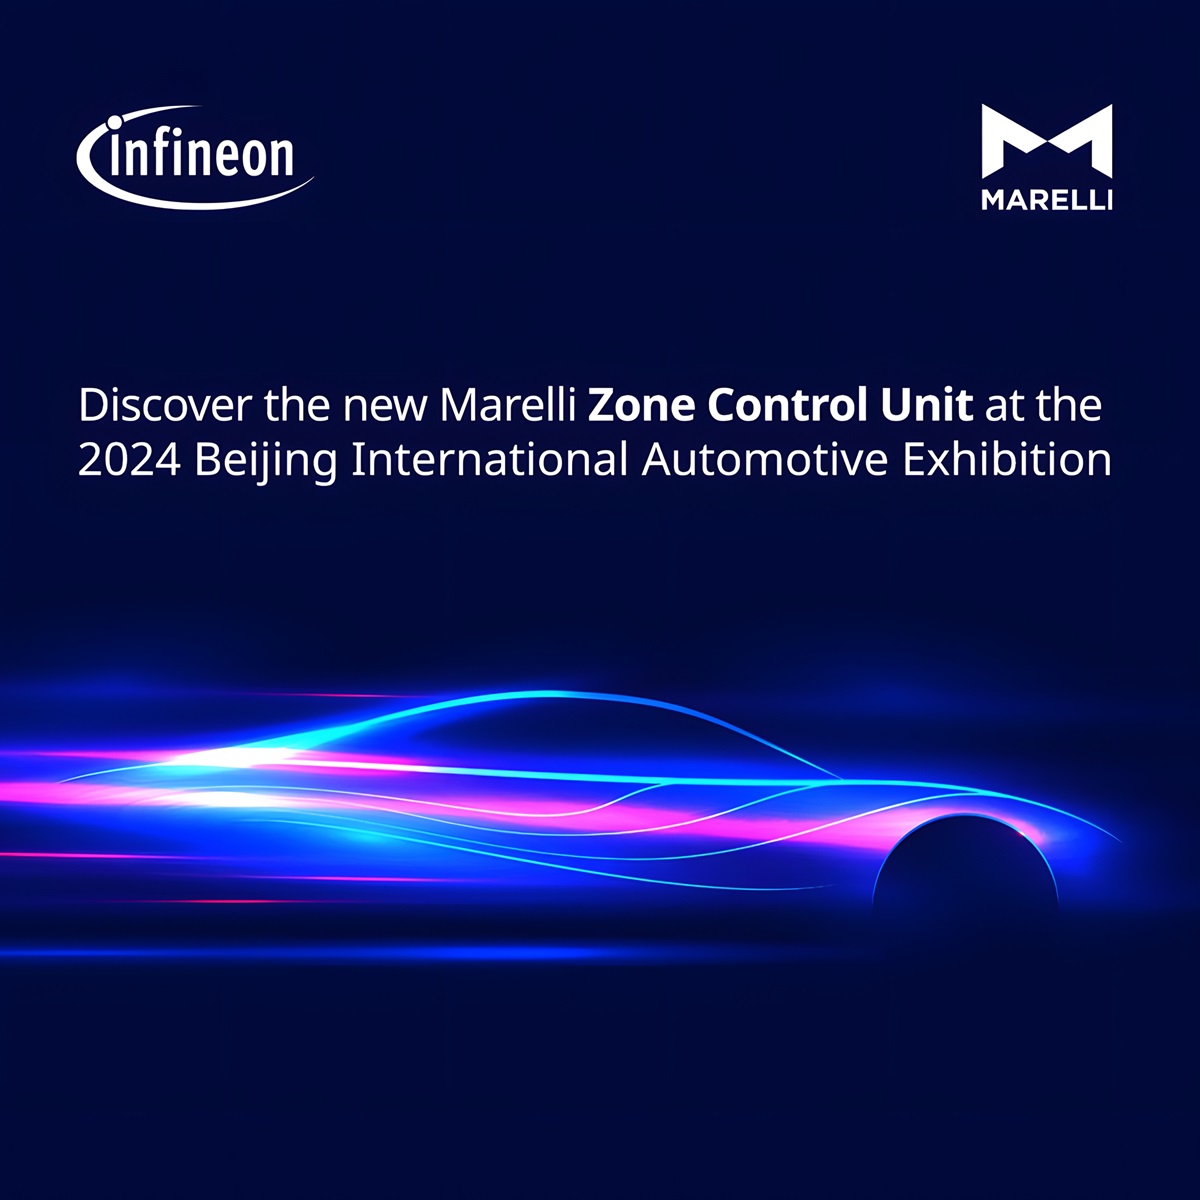 Marelli and Infineon Collaborate to Showcase Marelli’s Zone Control Unit